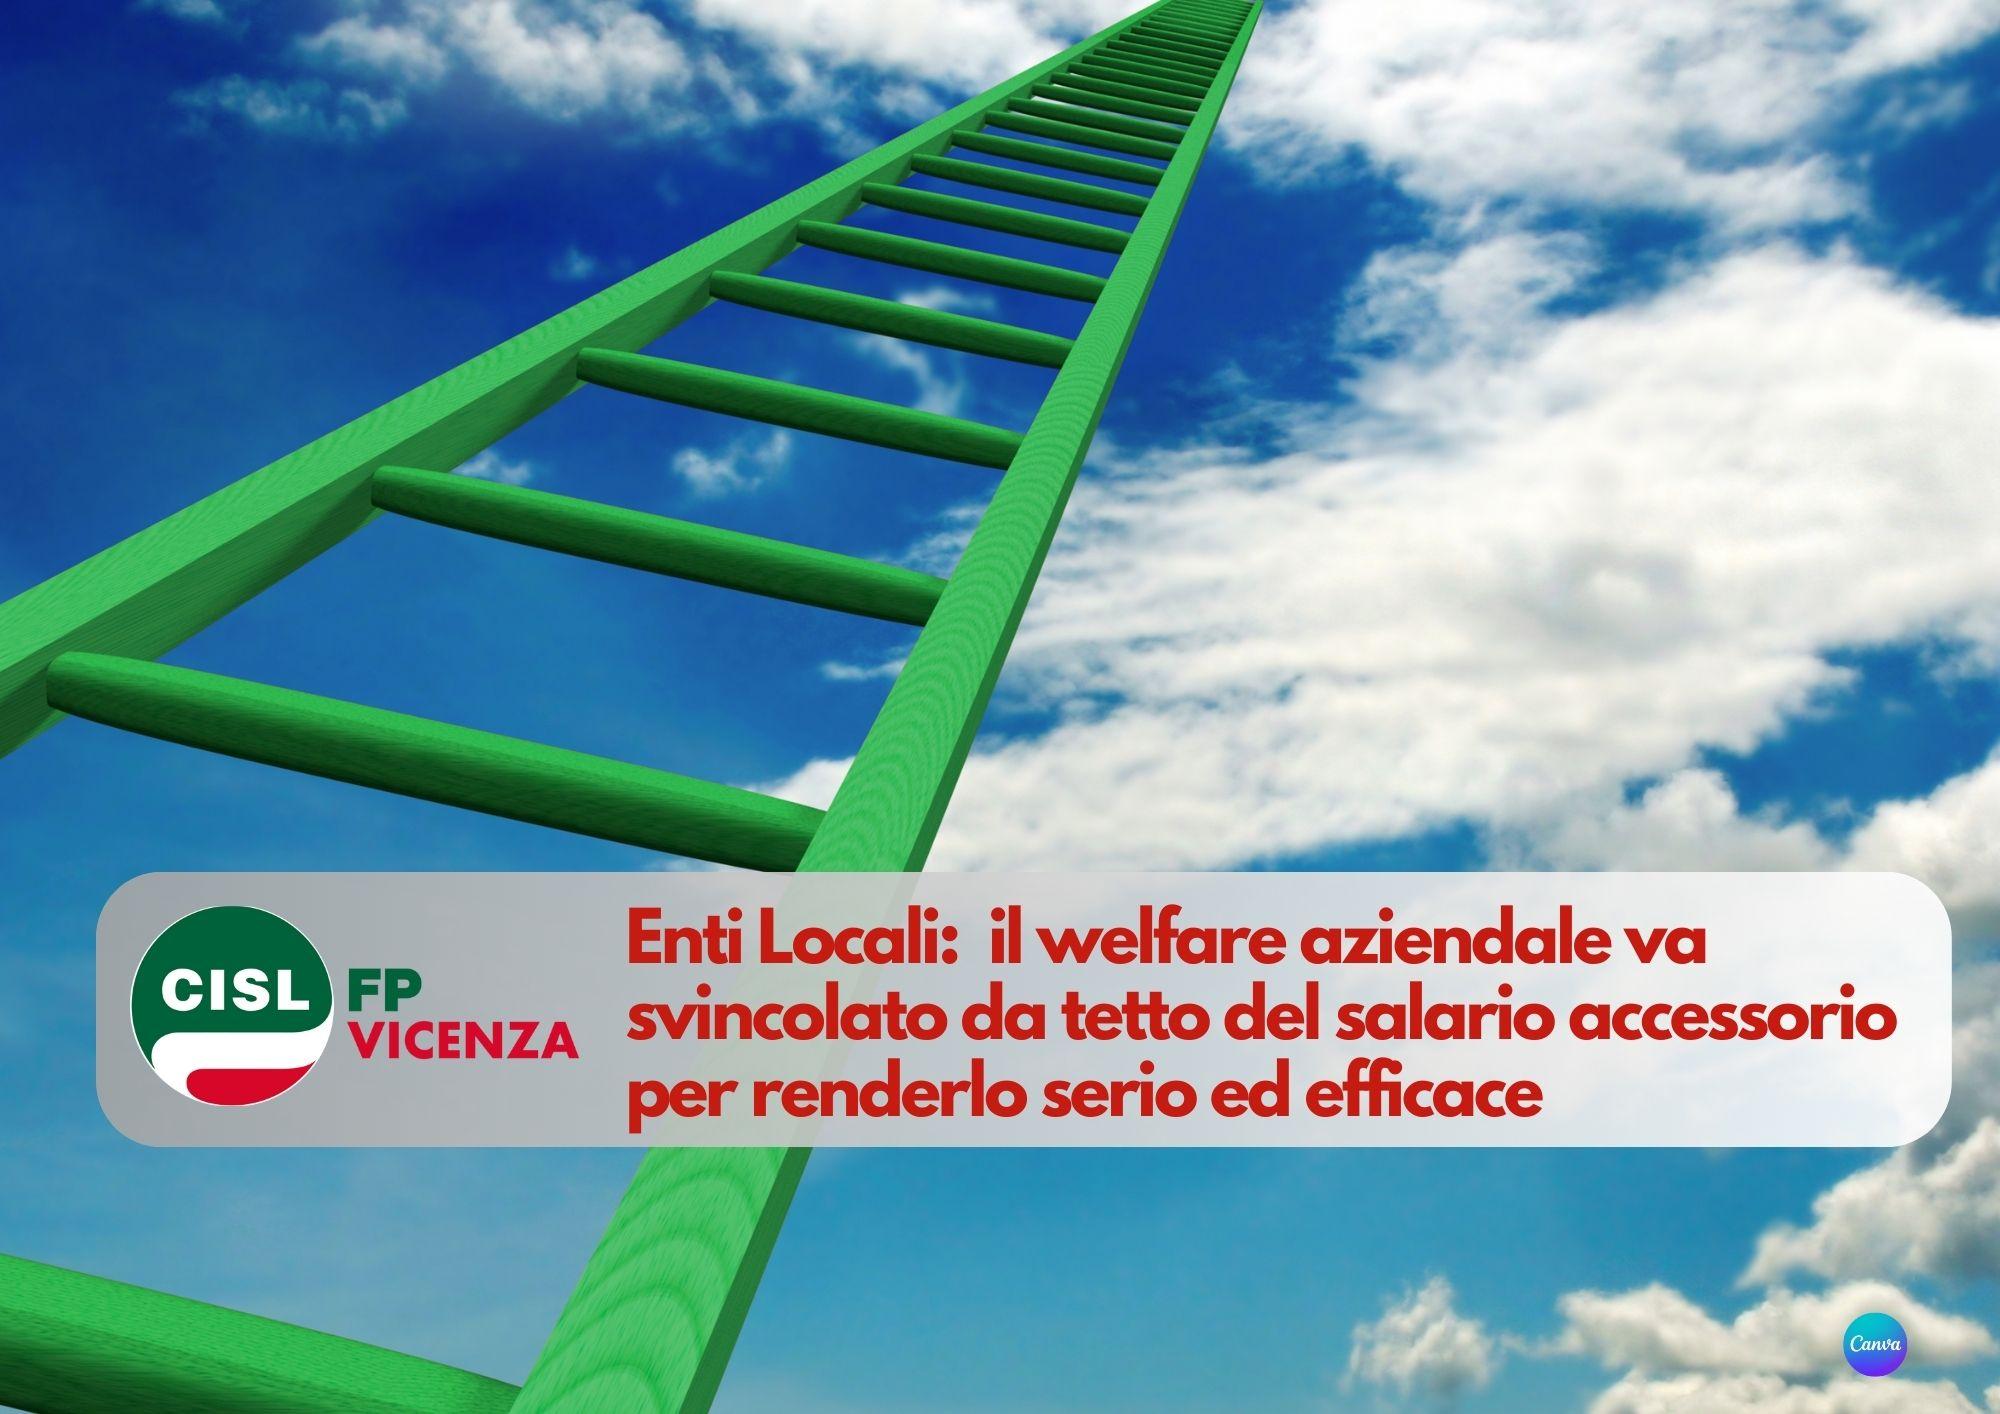 CISL FP Vicenza. Enti Locali: il welfare aziendale va svincolato da tetto del salario accessorio.